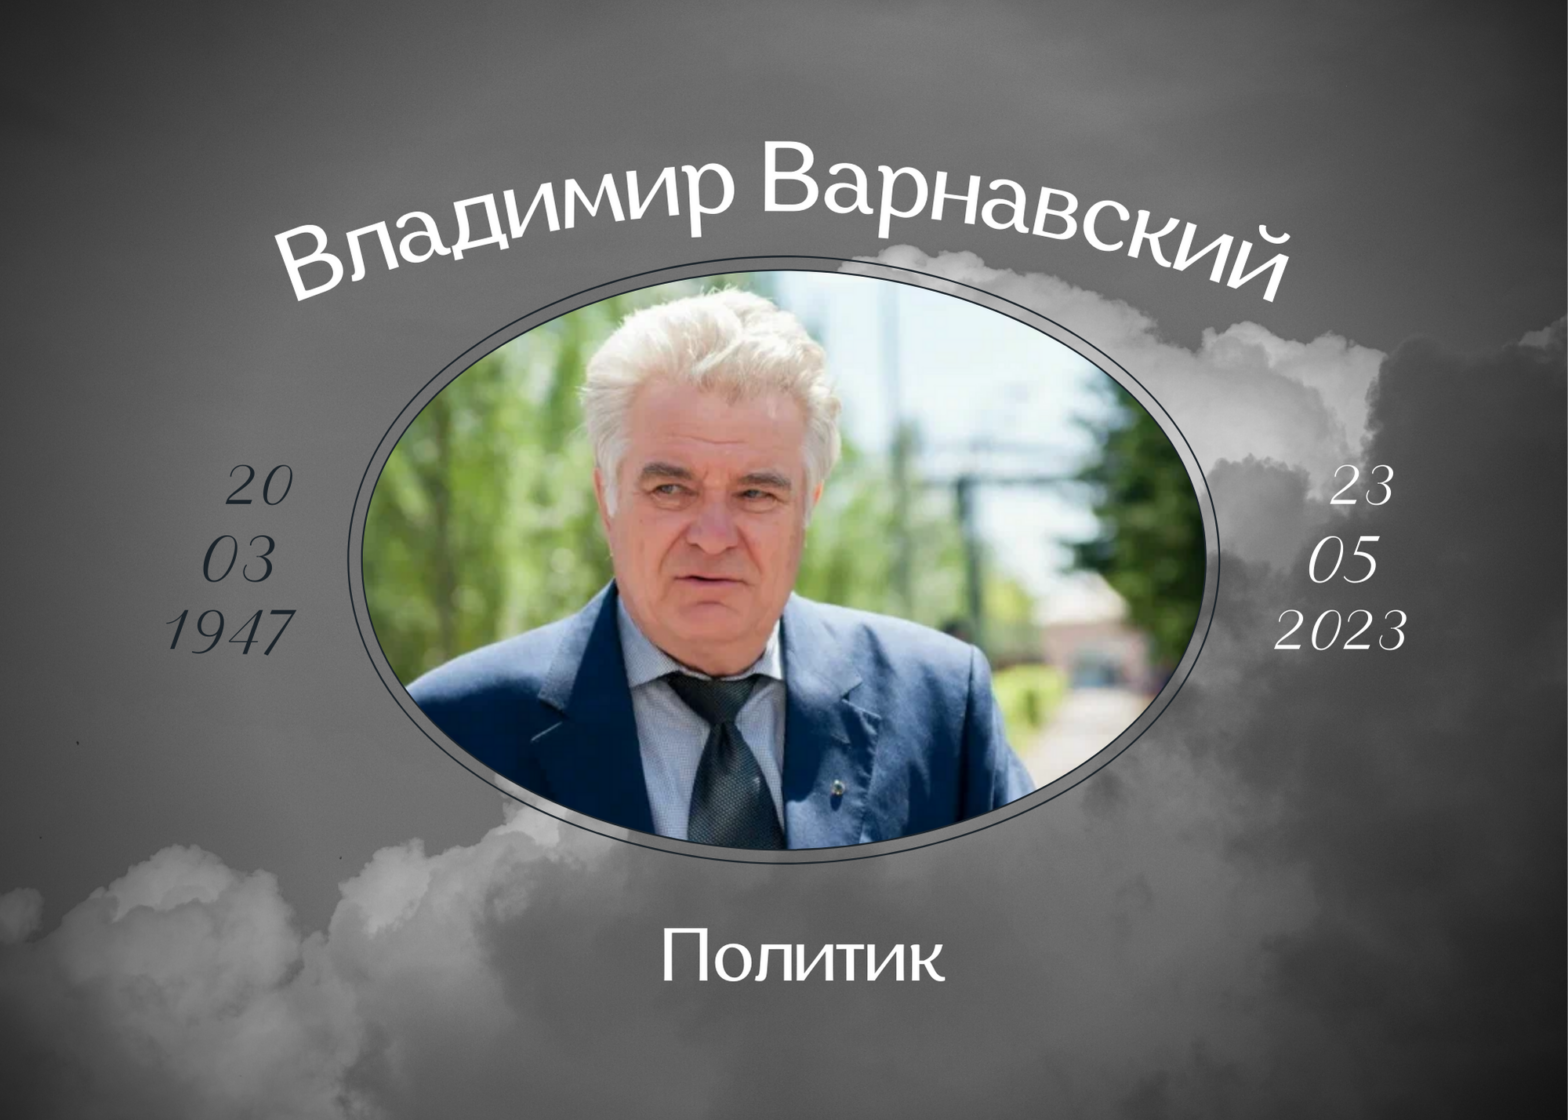 Умер председатель заксобрания Омской области Владимир Варнавский